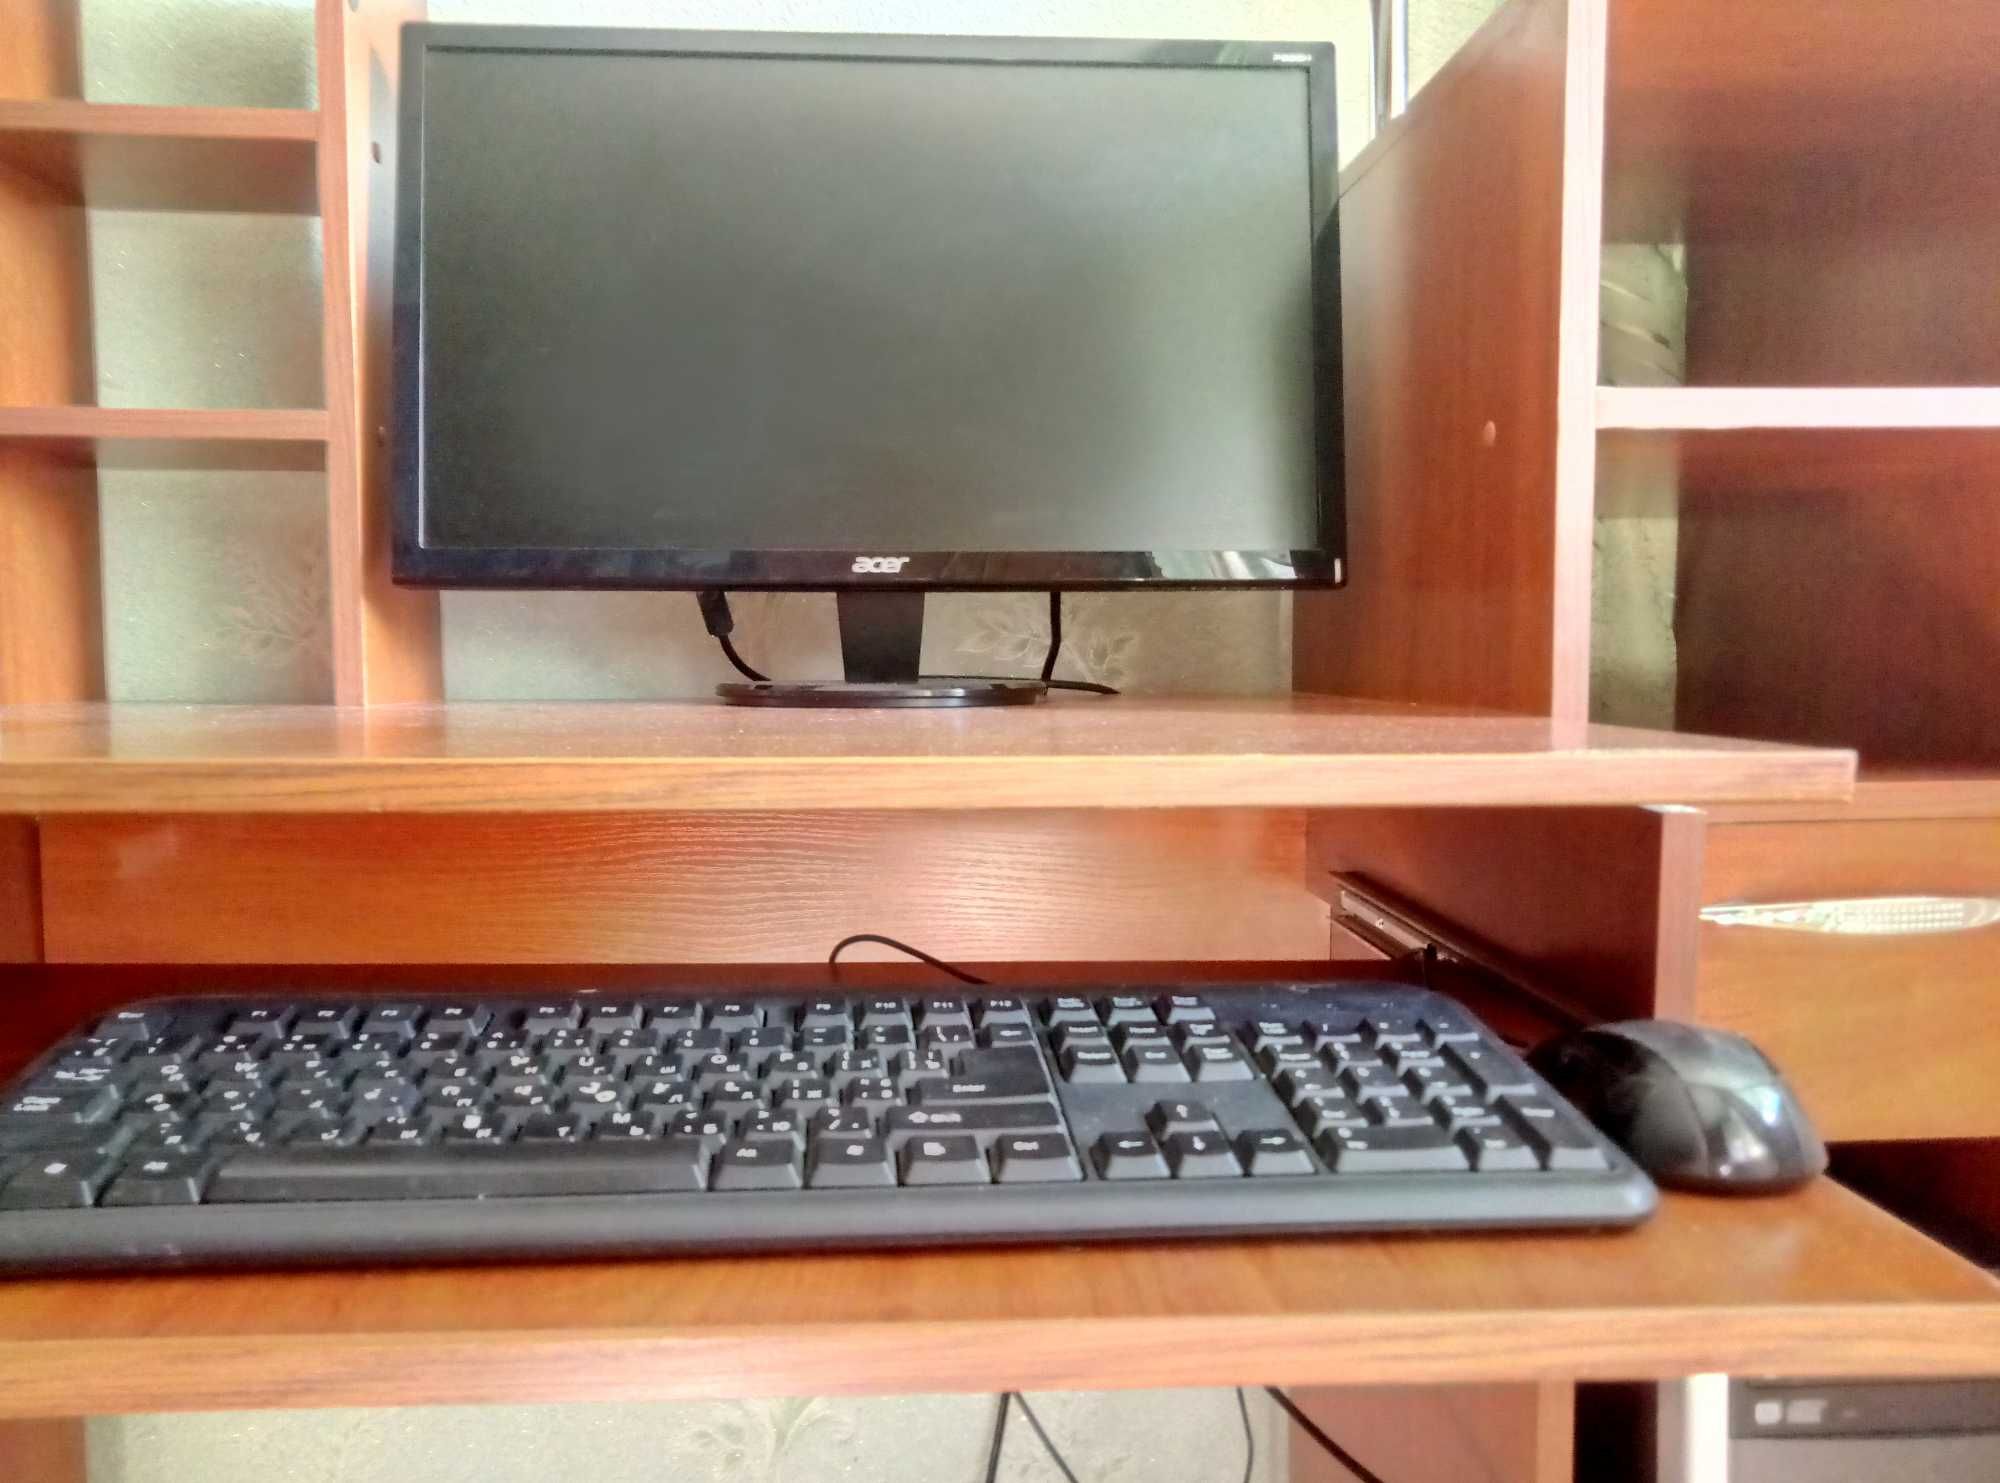 Компьютер для дома и офиса